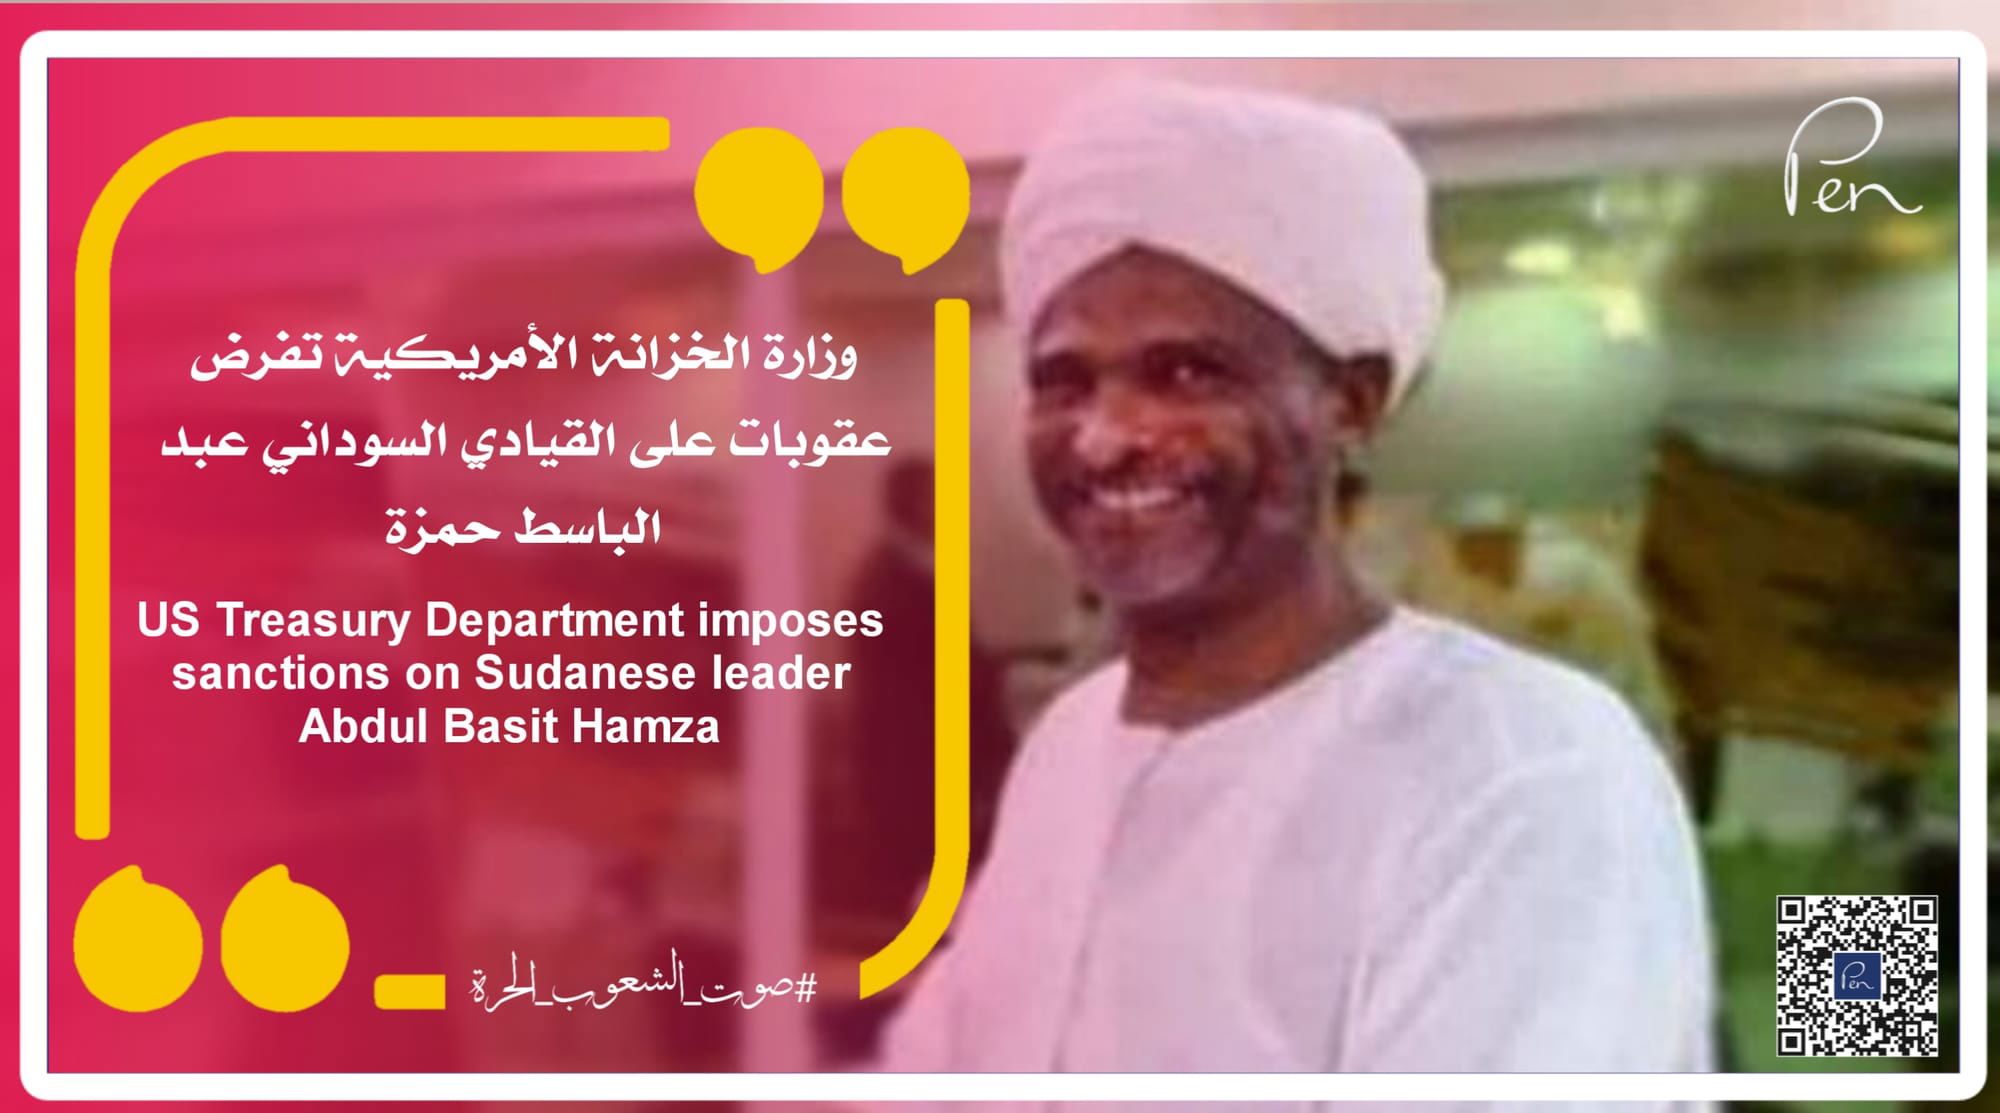 وزارة الخزانة الأمريكية تفرض عقوبات على القيادي السوداني عبد الباسط حمزة